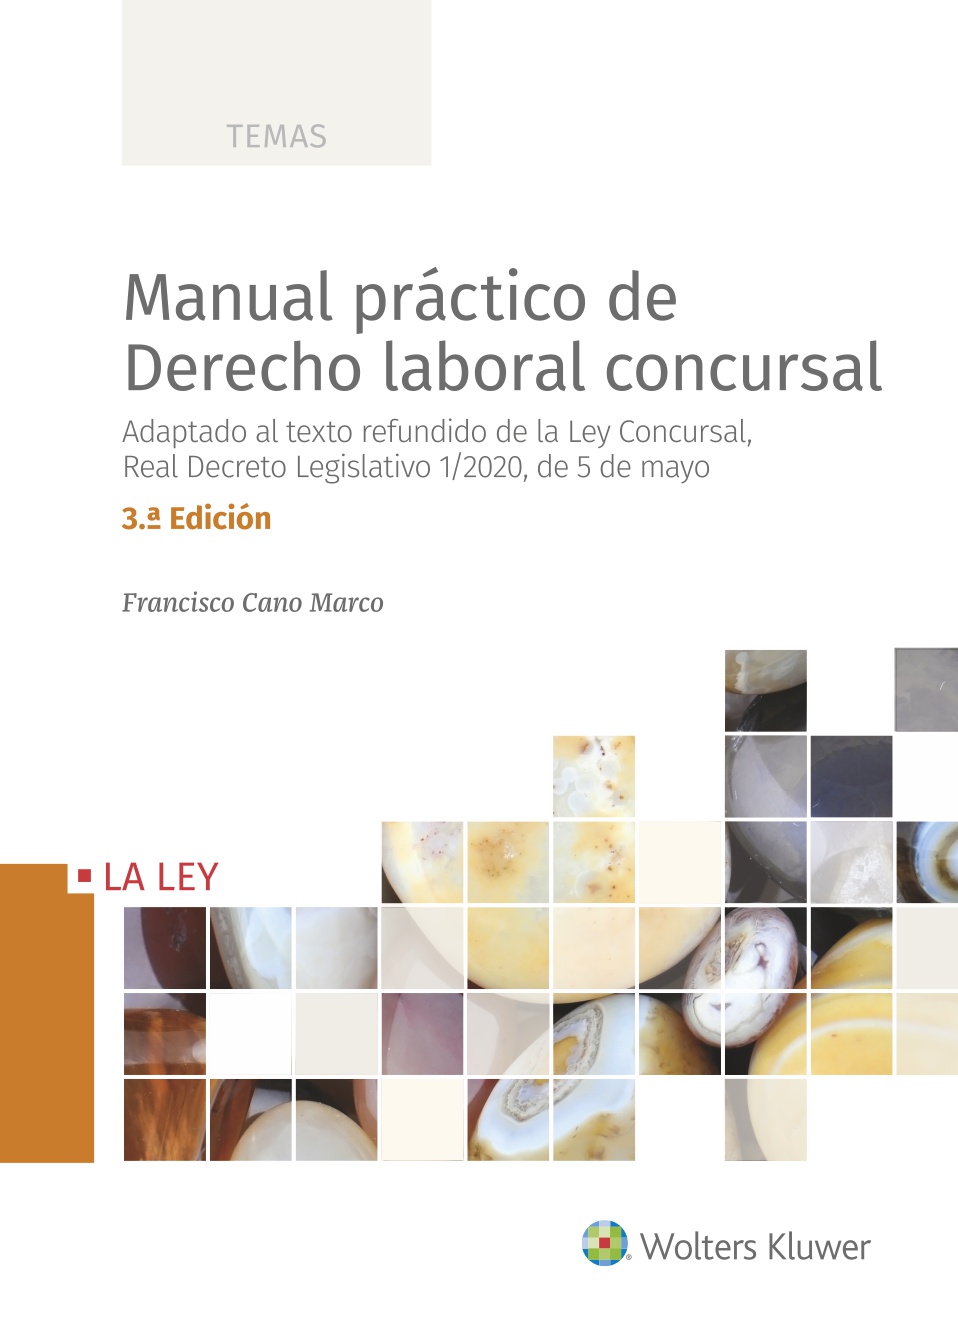 MANUAL PRACTICO DE DERECHO LABORAL CONCURSAL